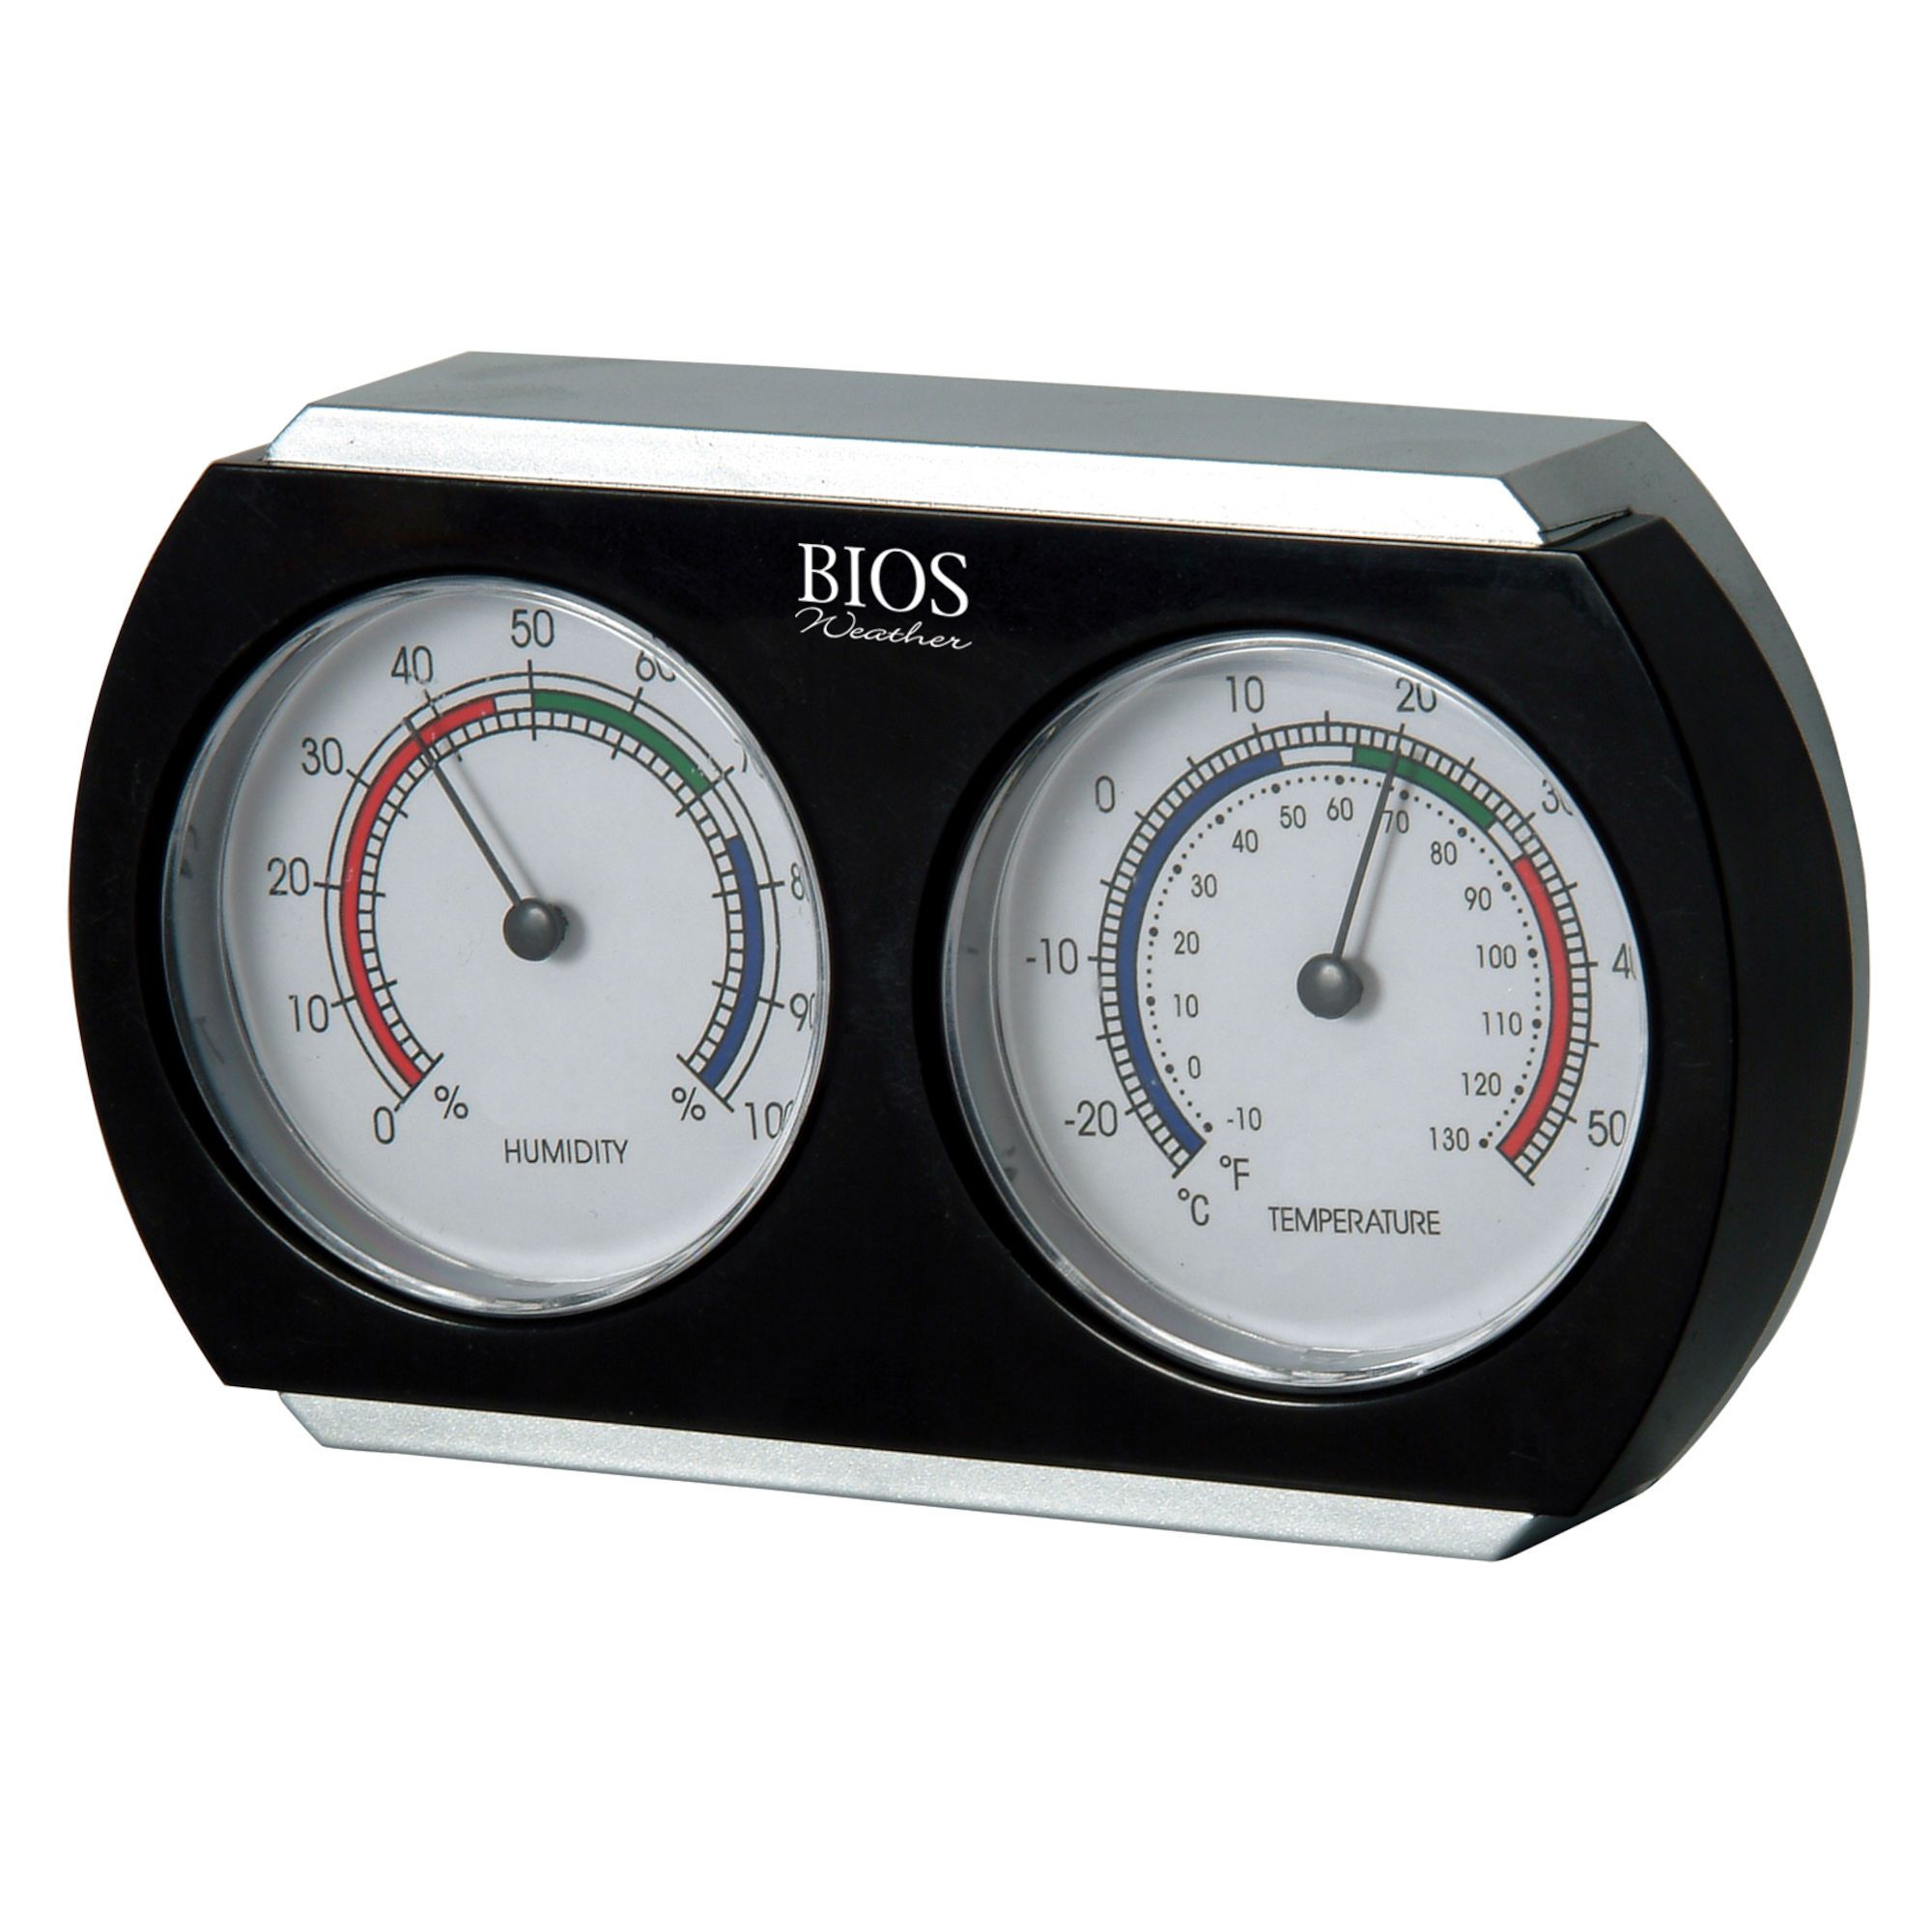 Thermomètre numérique d'intérieur/ d'extérieur avec alarme – BIOS